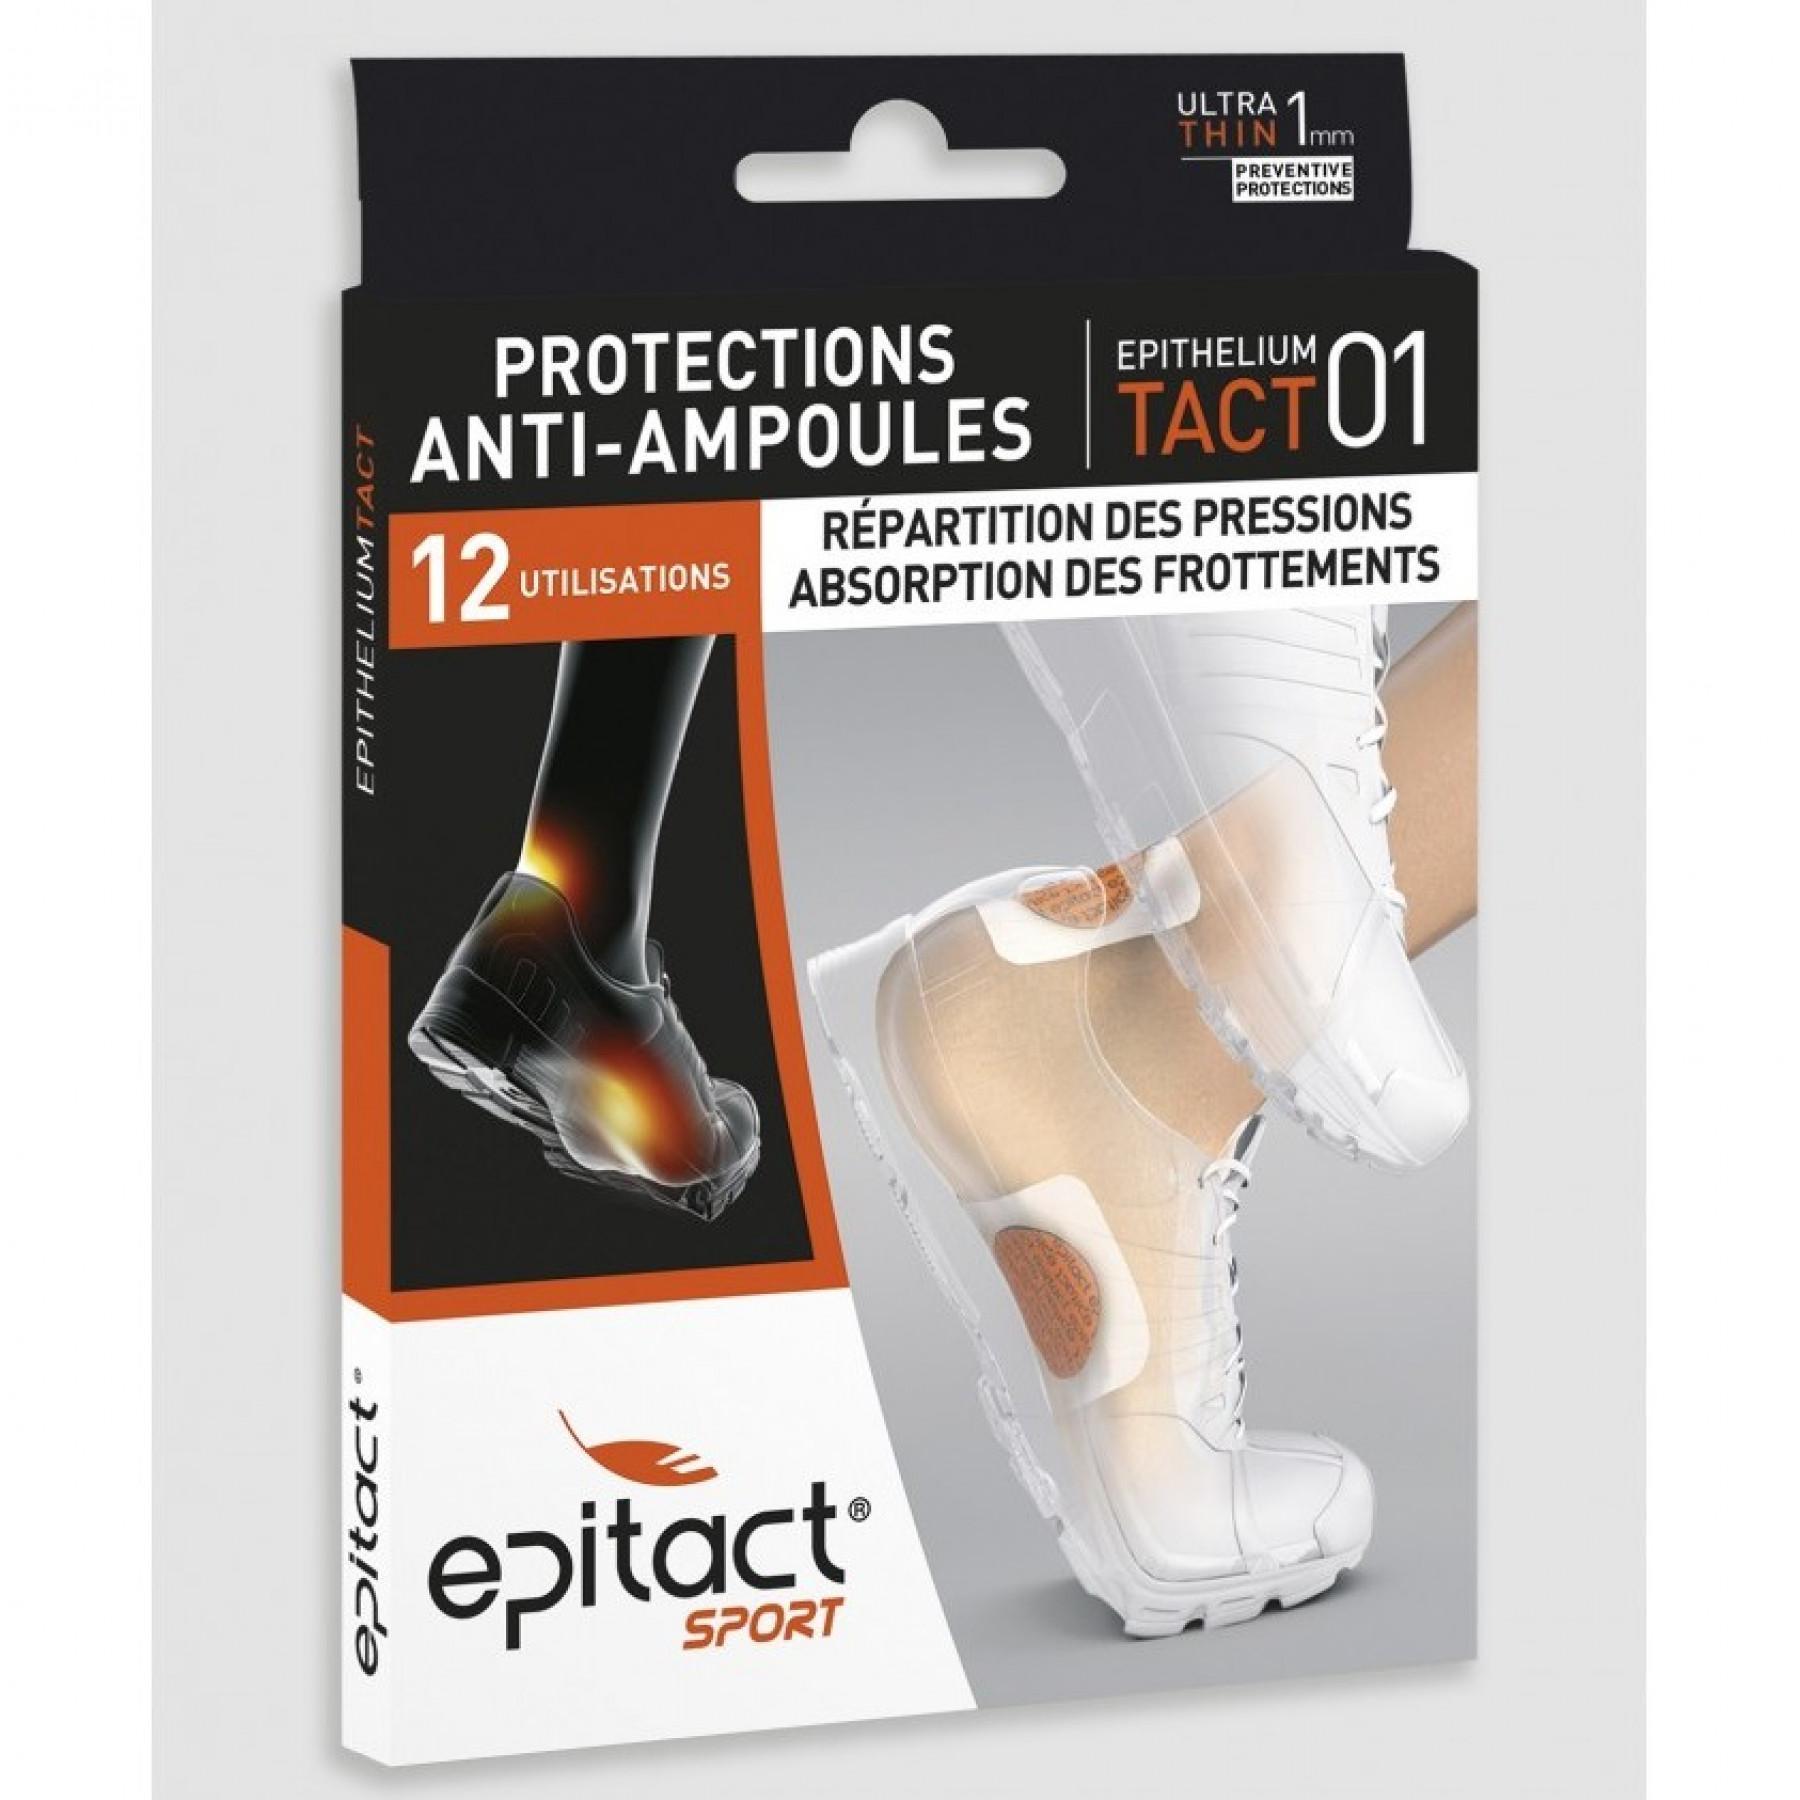 Protezioni per vesciche Epitact EPITHELIUMTACT 01 (lot de 4 protections + 12 adhésifs)